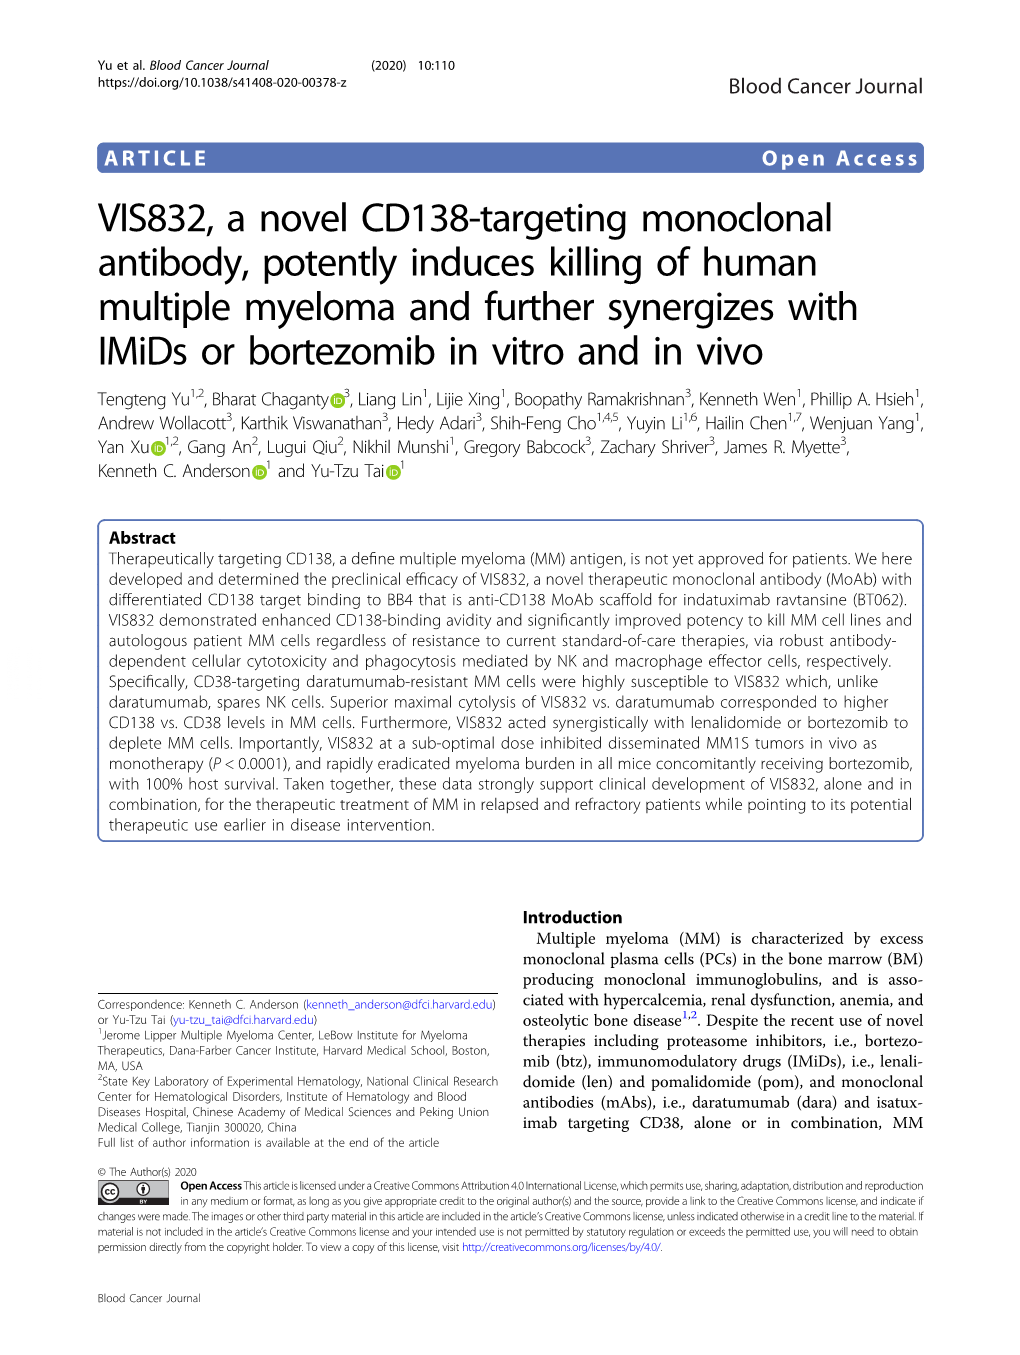 VIS832, a Novel CD138-Targeting Monoclonal Antibody, Potently